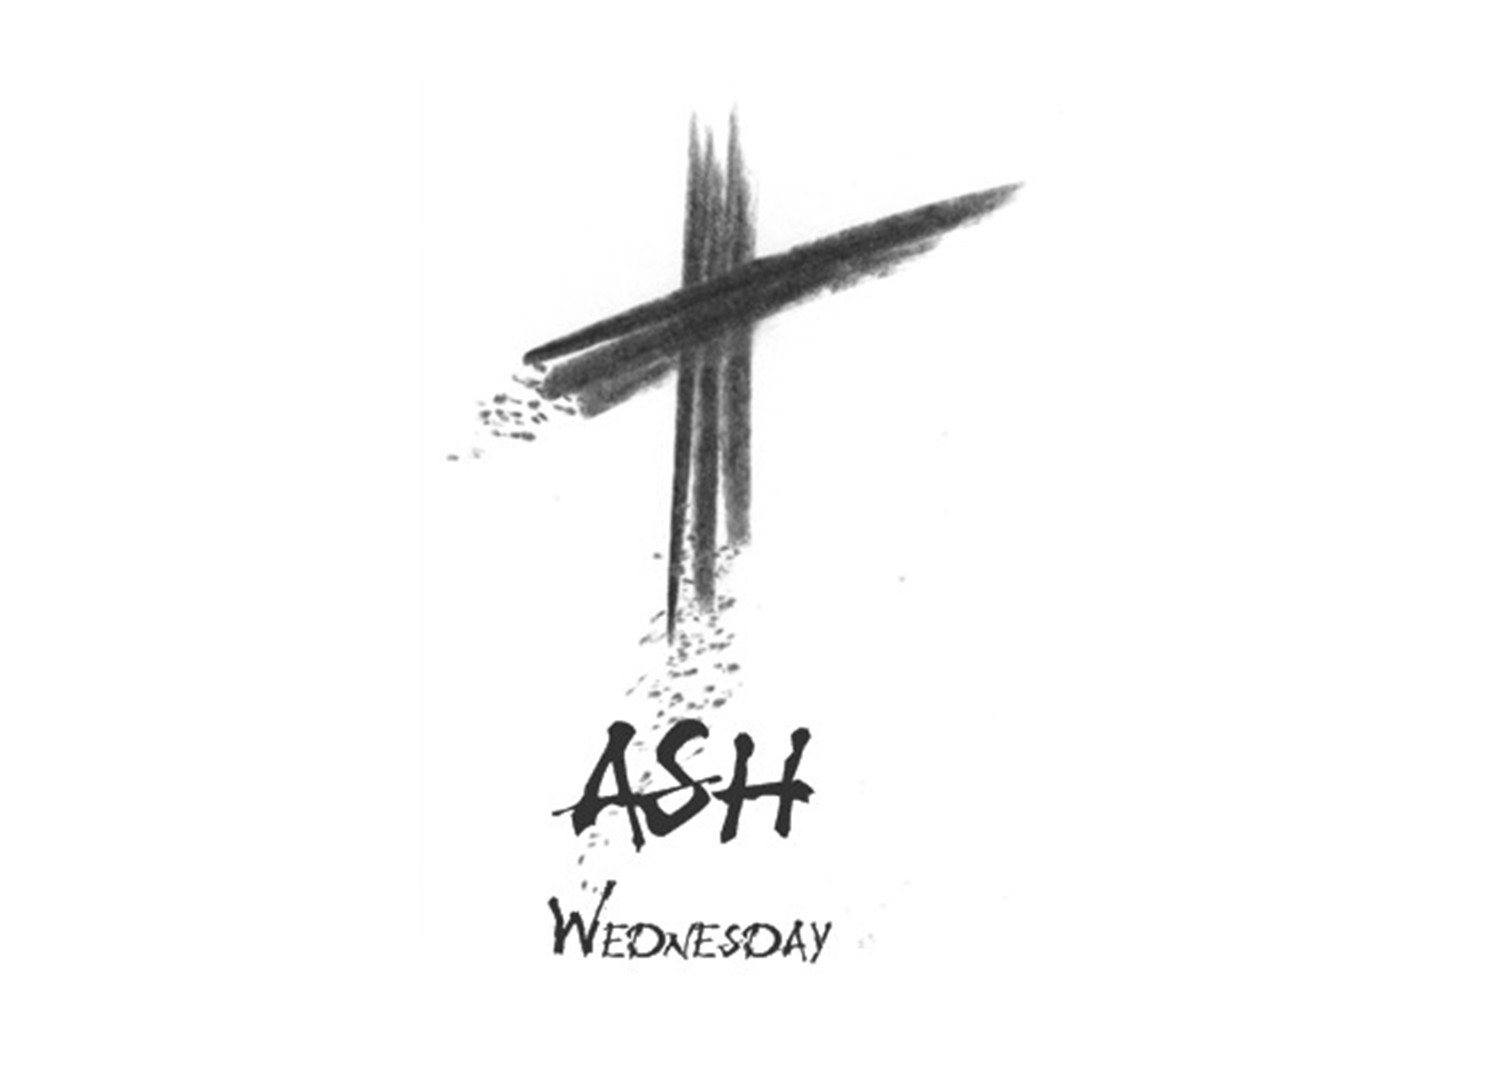 The Catholic Toolbox: Ash Wed